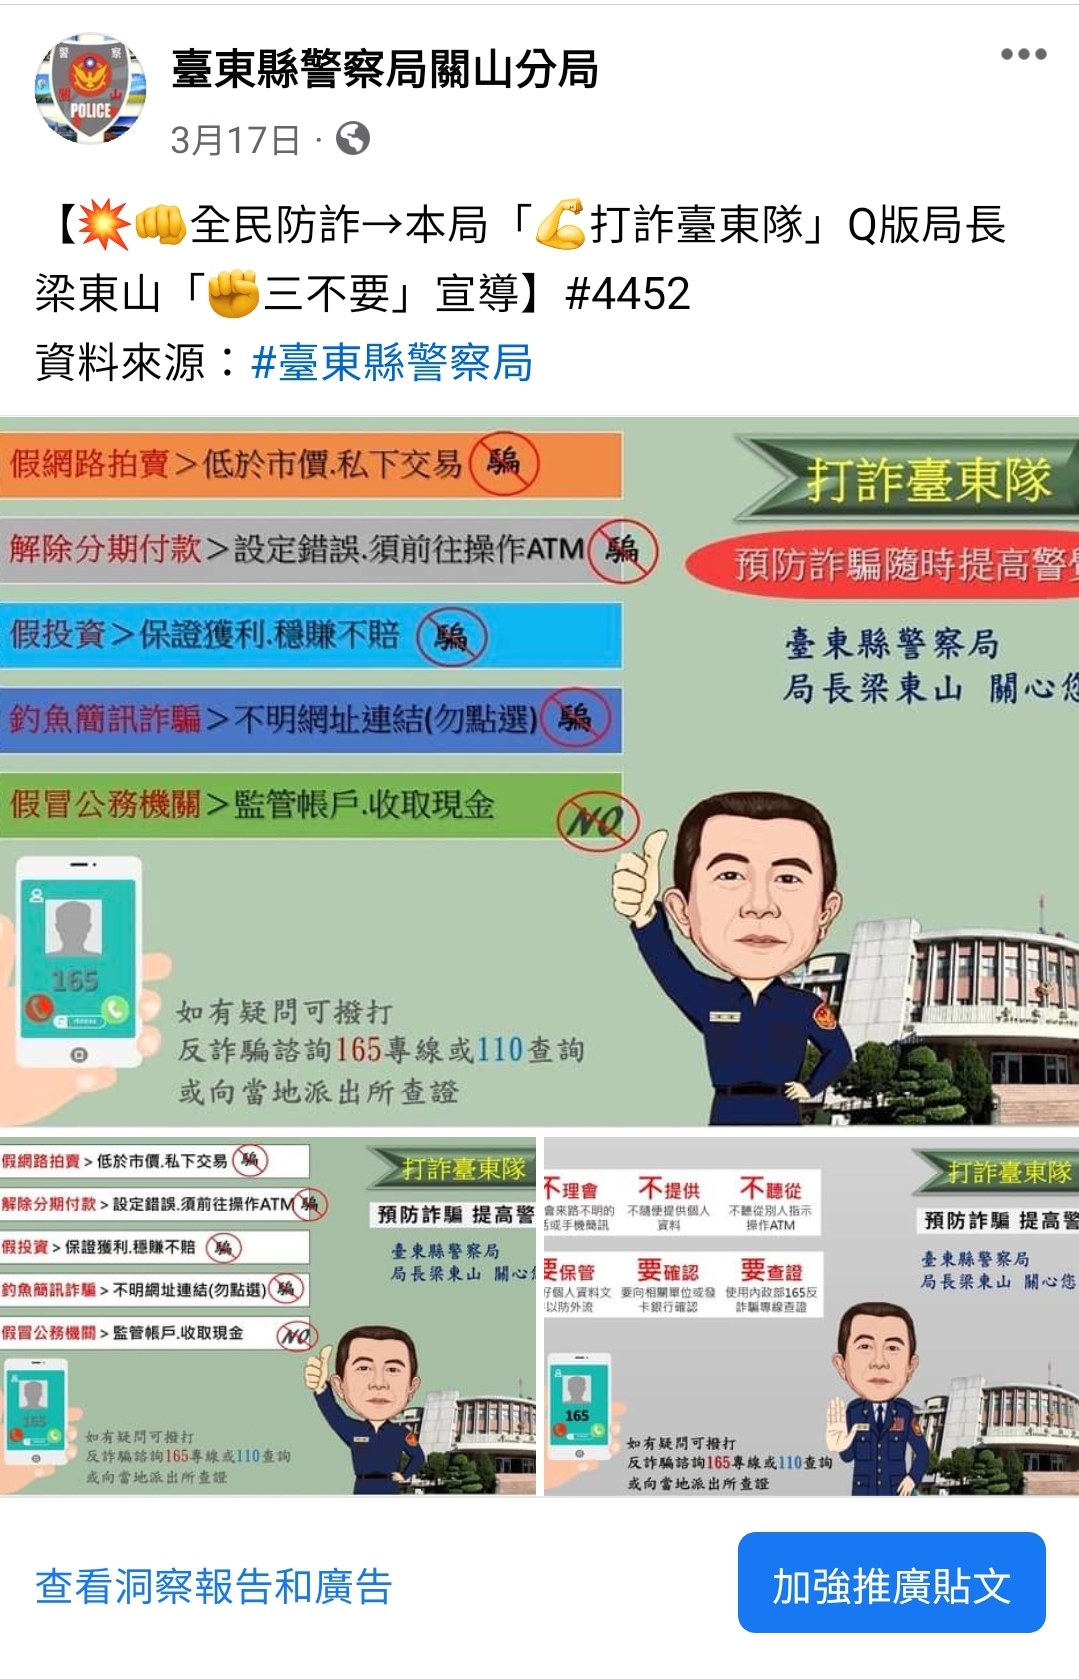 本分局臉書粉絲頁PO文宣導「Q版局長打詐臺東隊」